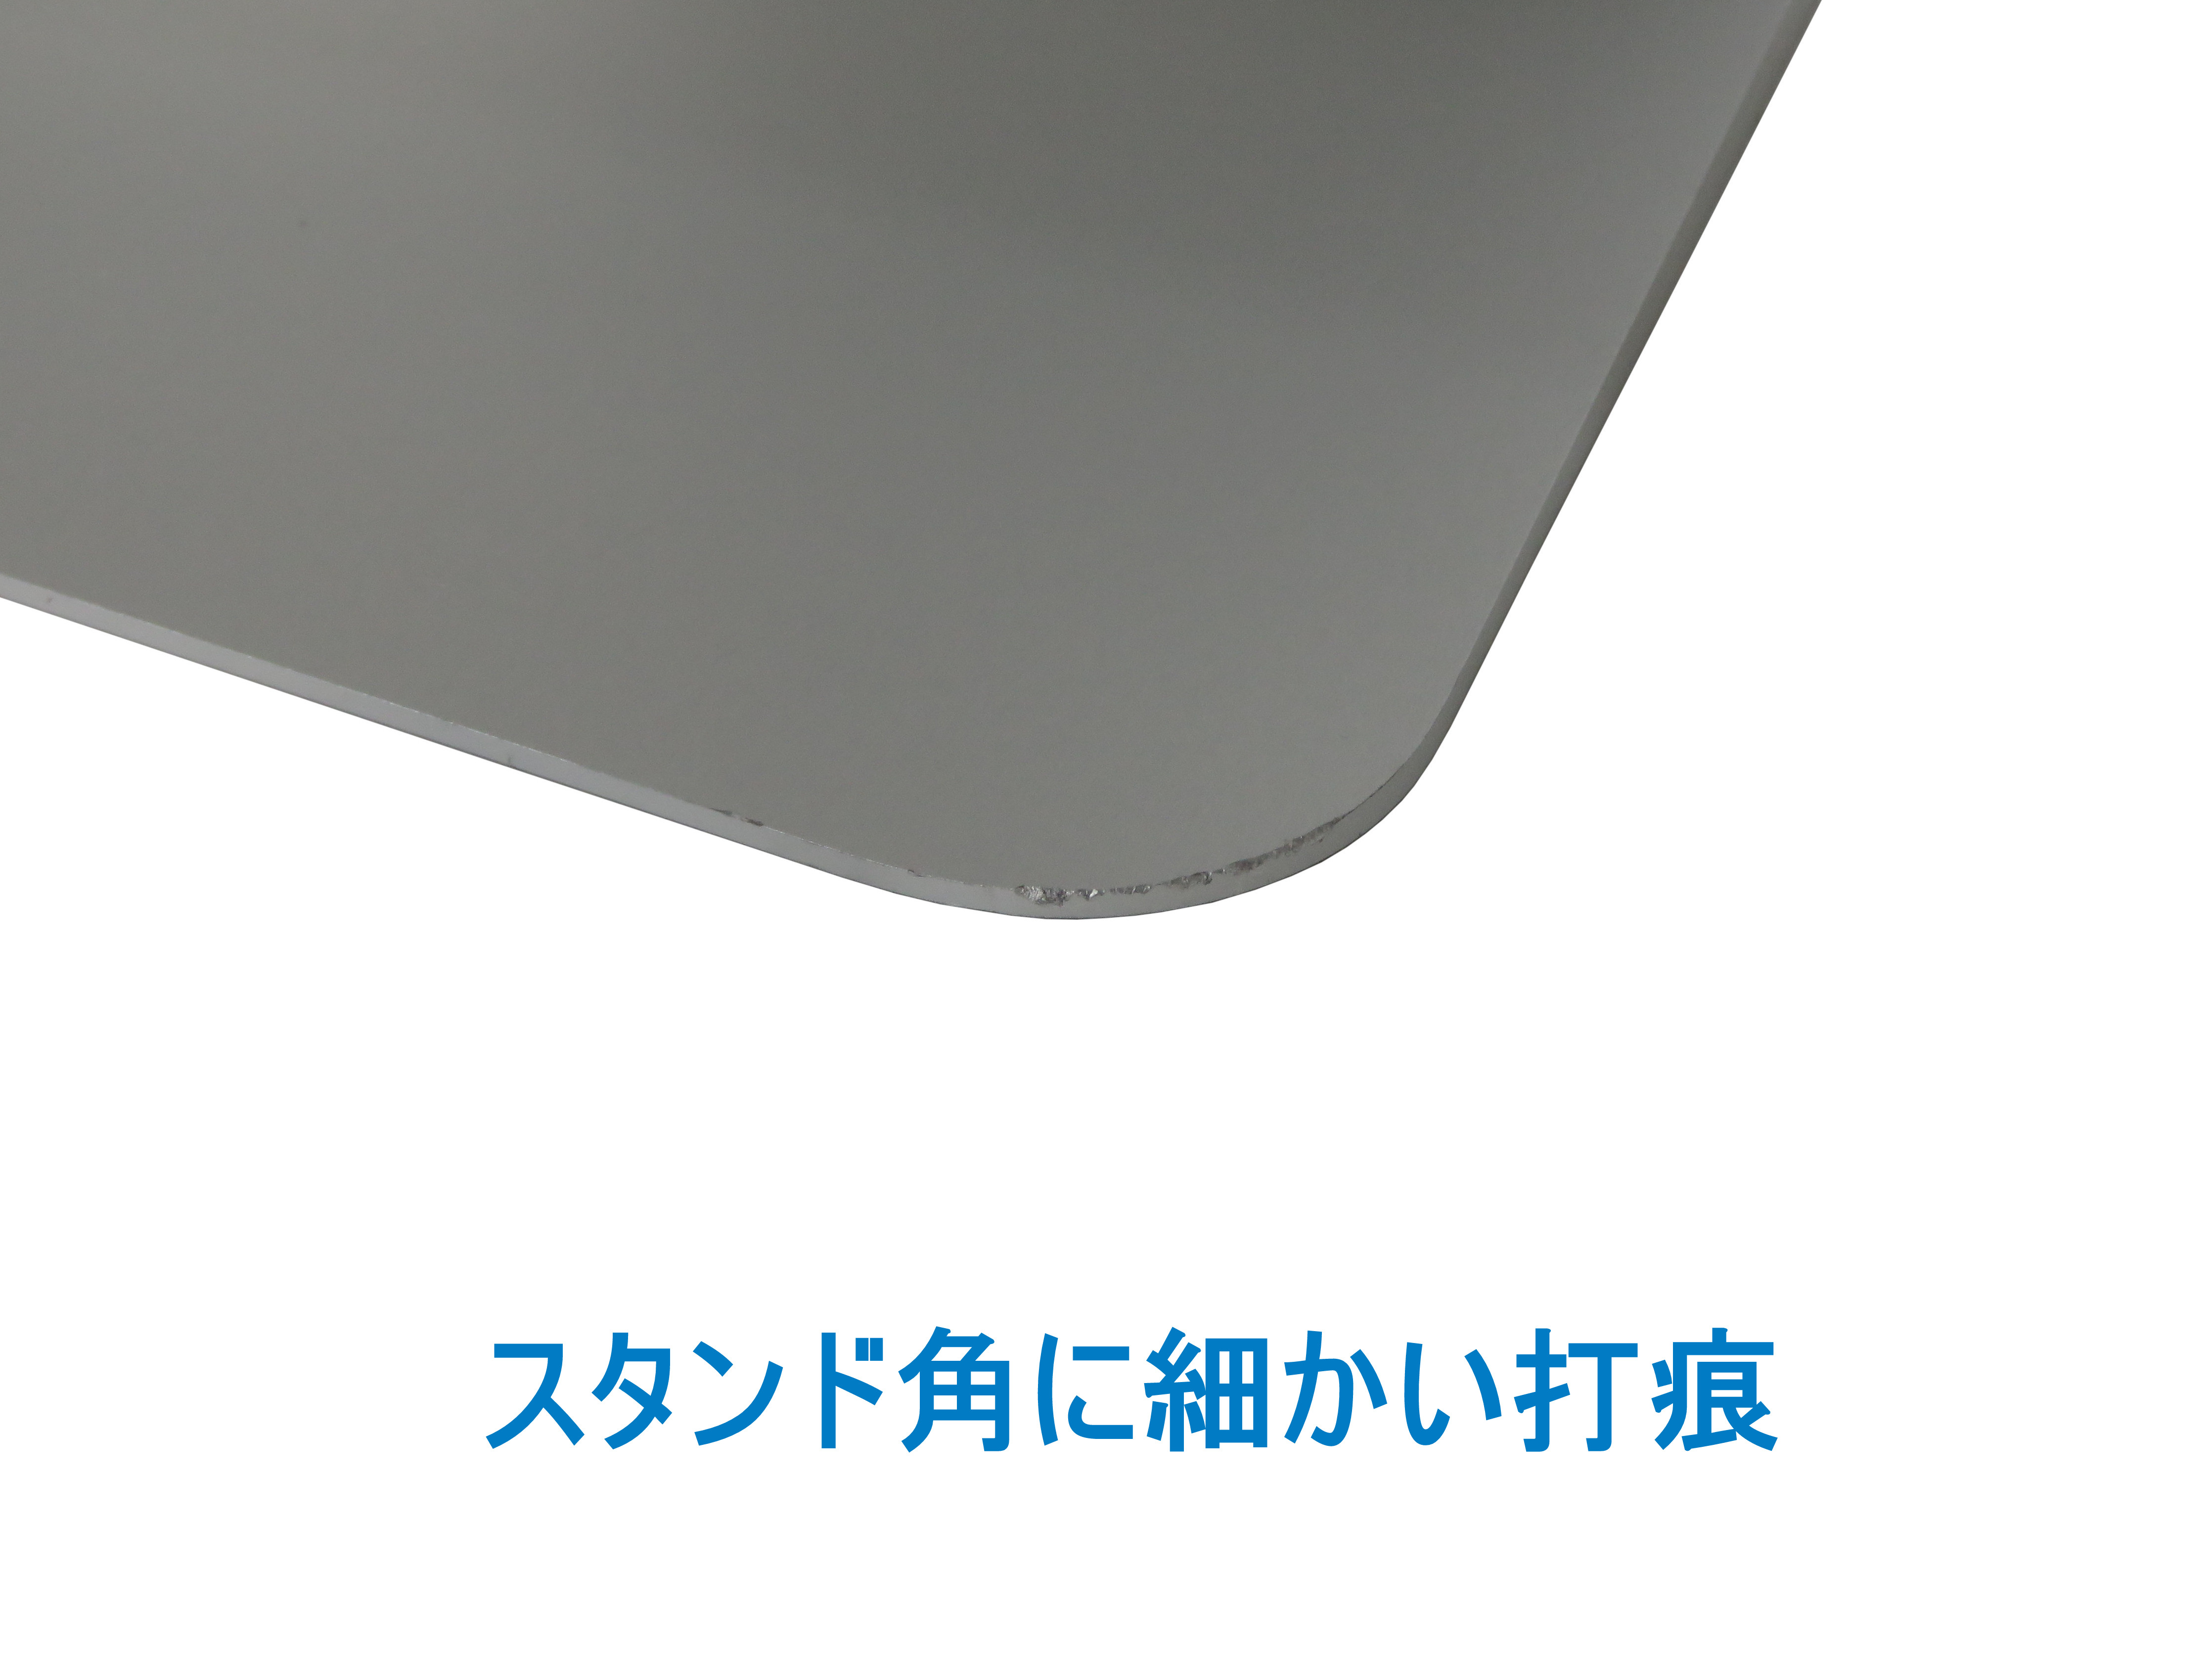 【Apple】iMac (Retina 5K, 27-inch, 2017)